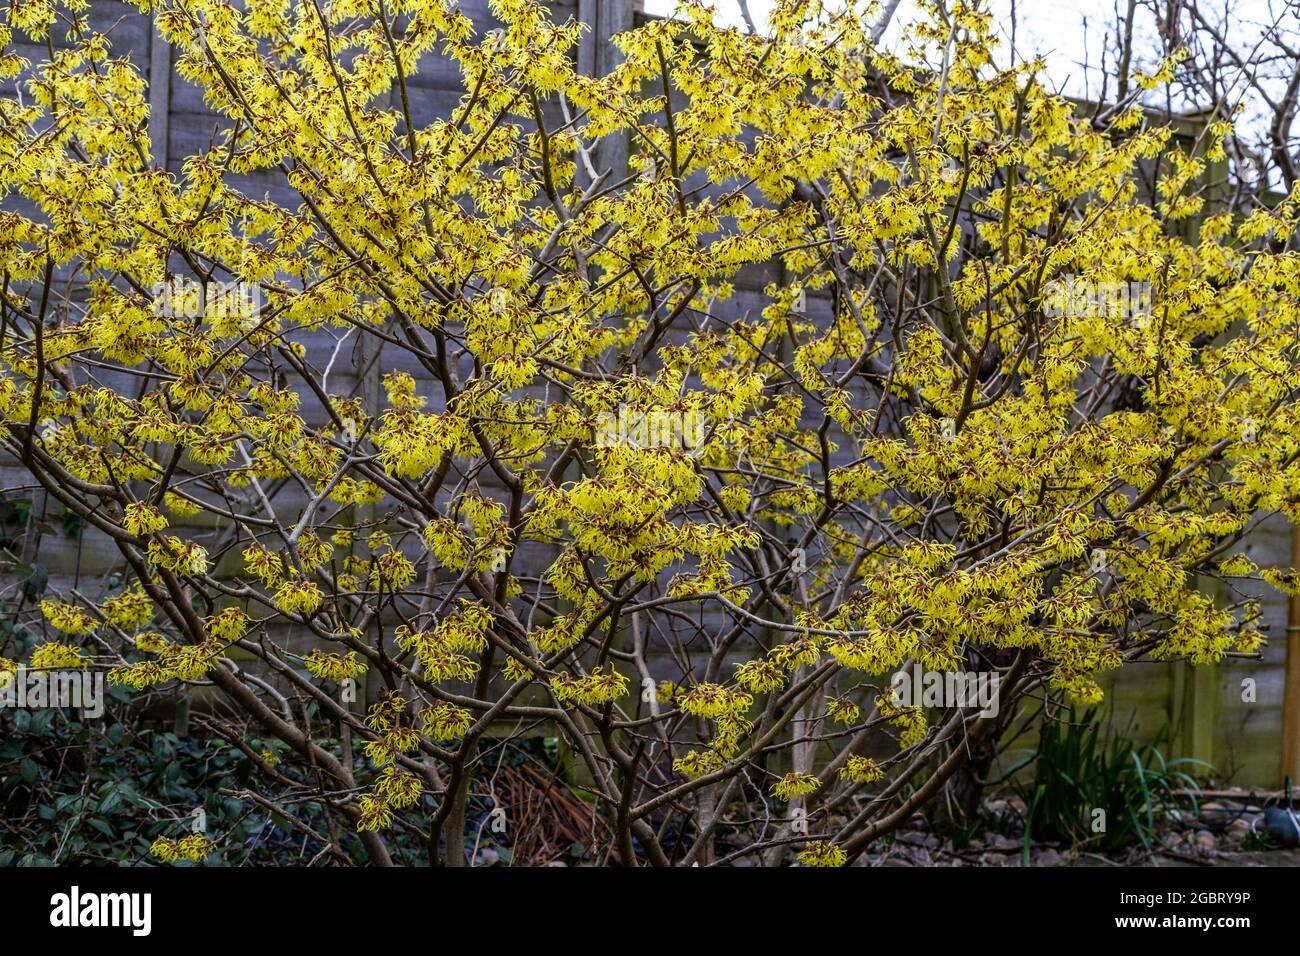 Una avellana de bruja en plena floración. Las flores amarillas proporcionan color en un jardín de invierno. (El Cairo) Foto de stock